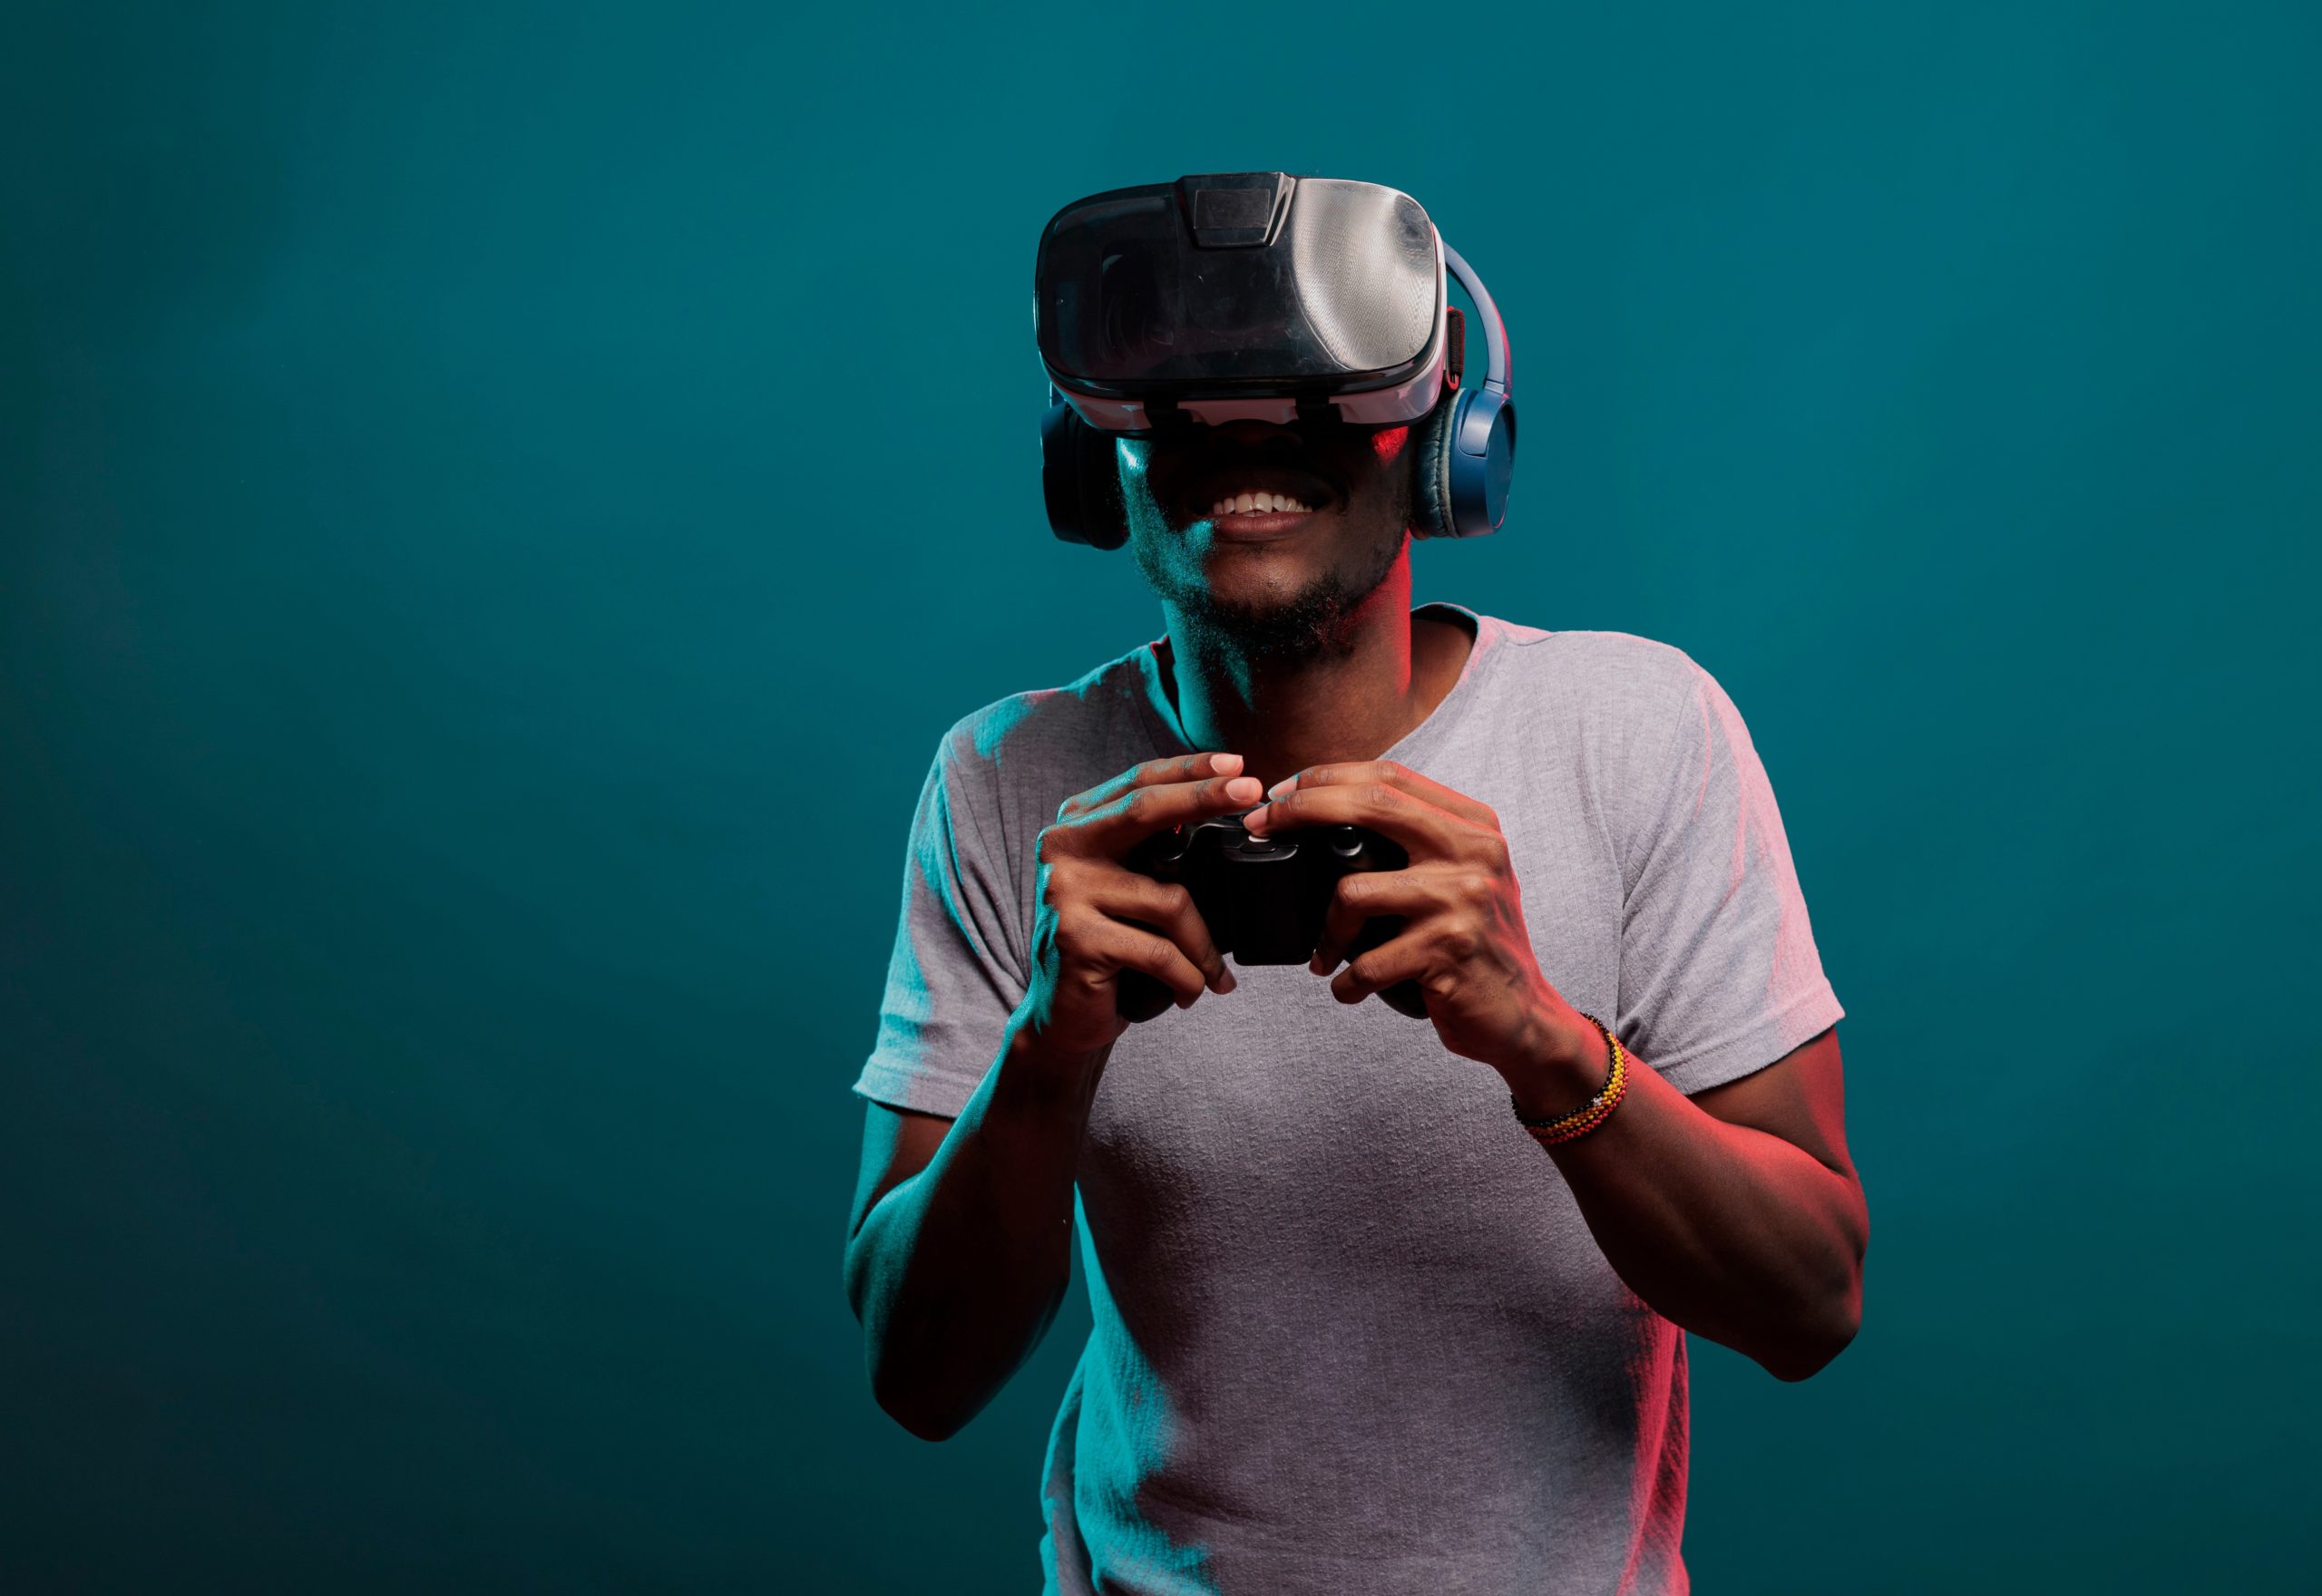 El boom de los videojuegos de realidad virtual